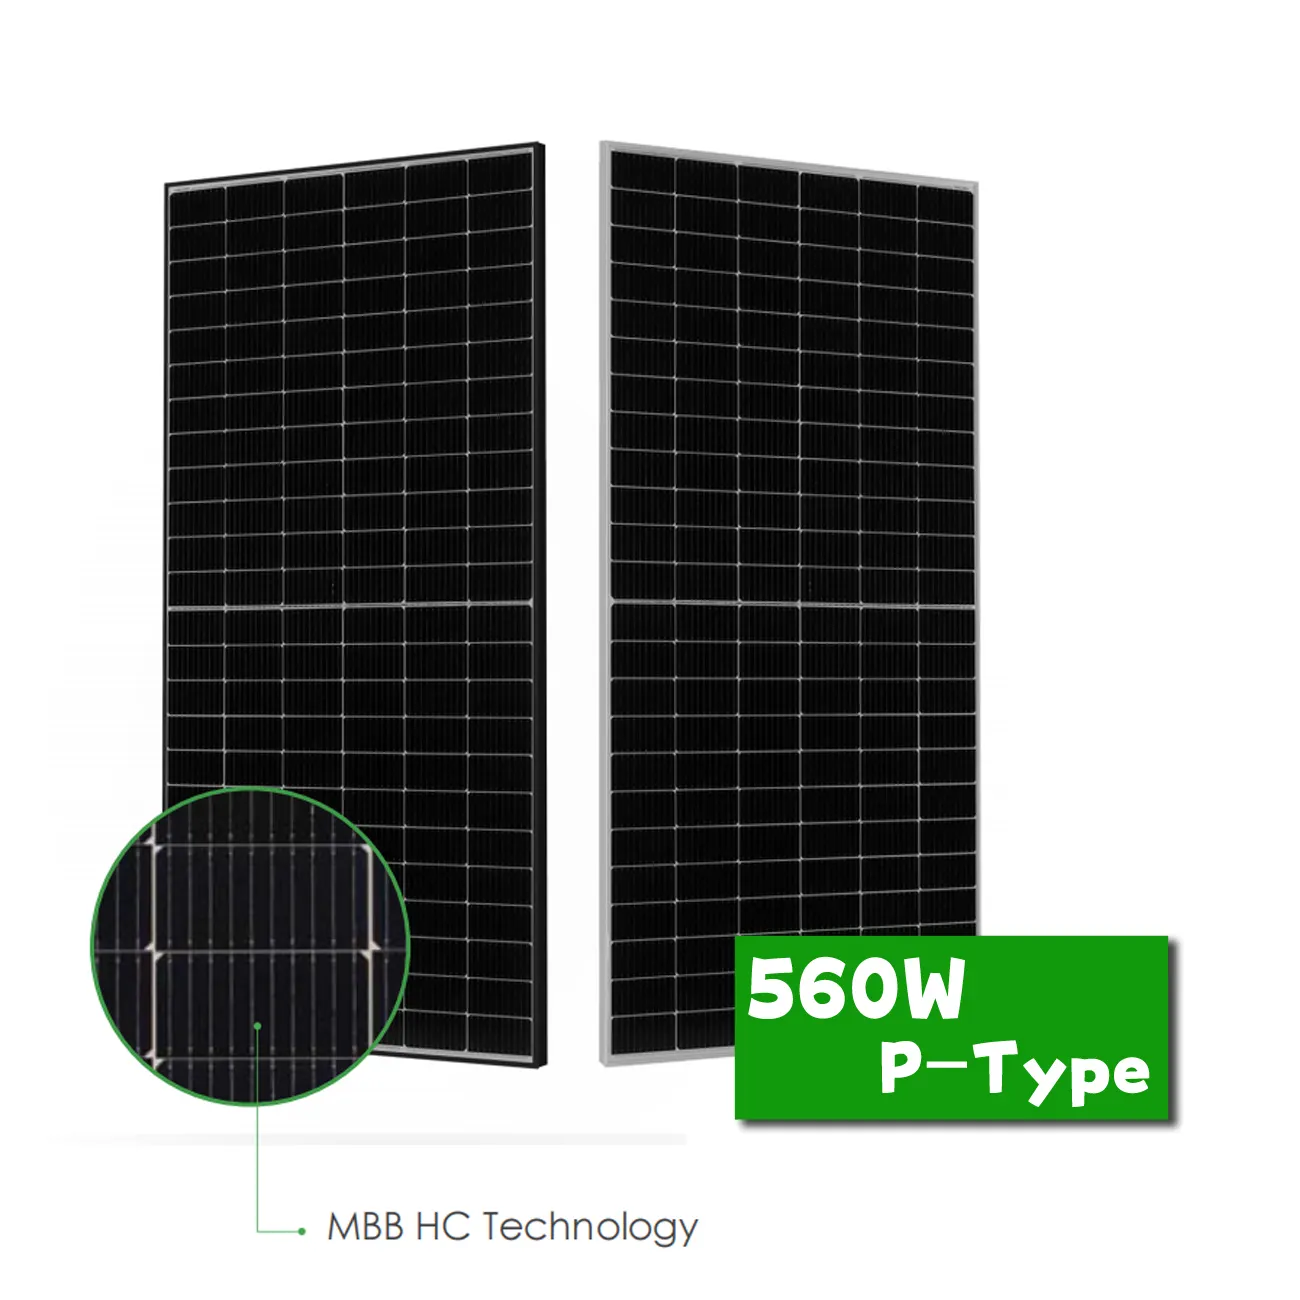 أفكار منتجات جديدة ذات جودة ممتازة وموثوق بها لوحات طاقة شمسية نصف خلية PERC 540 وات - 560 وات